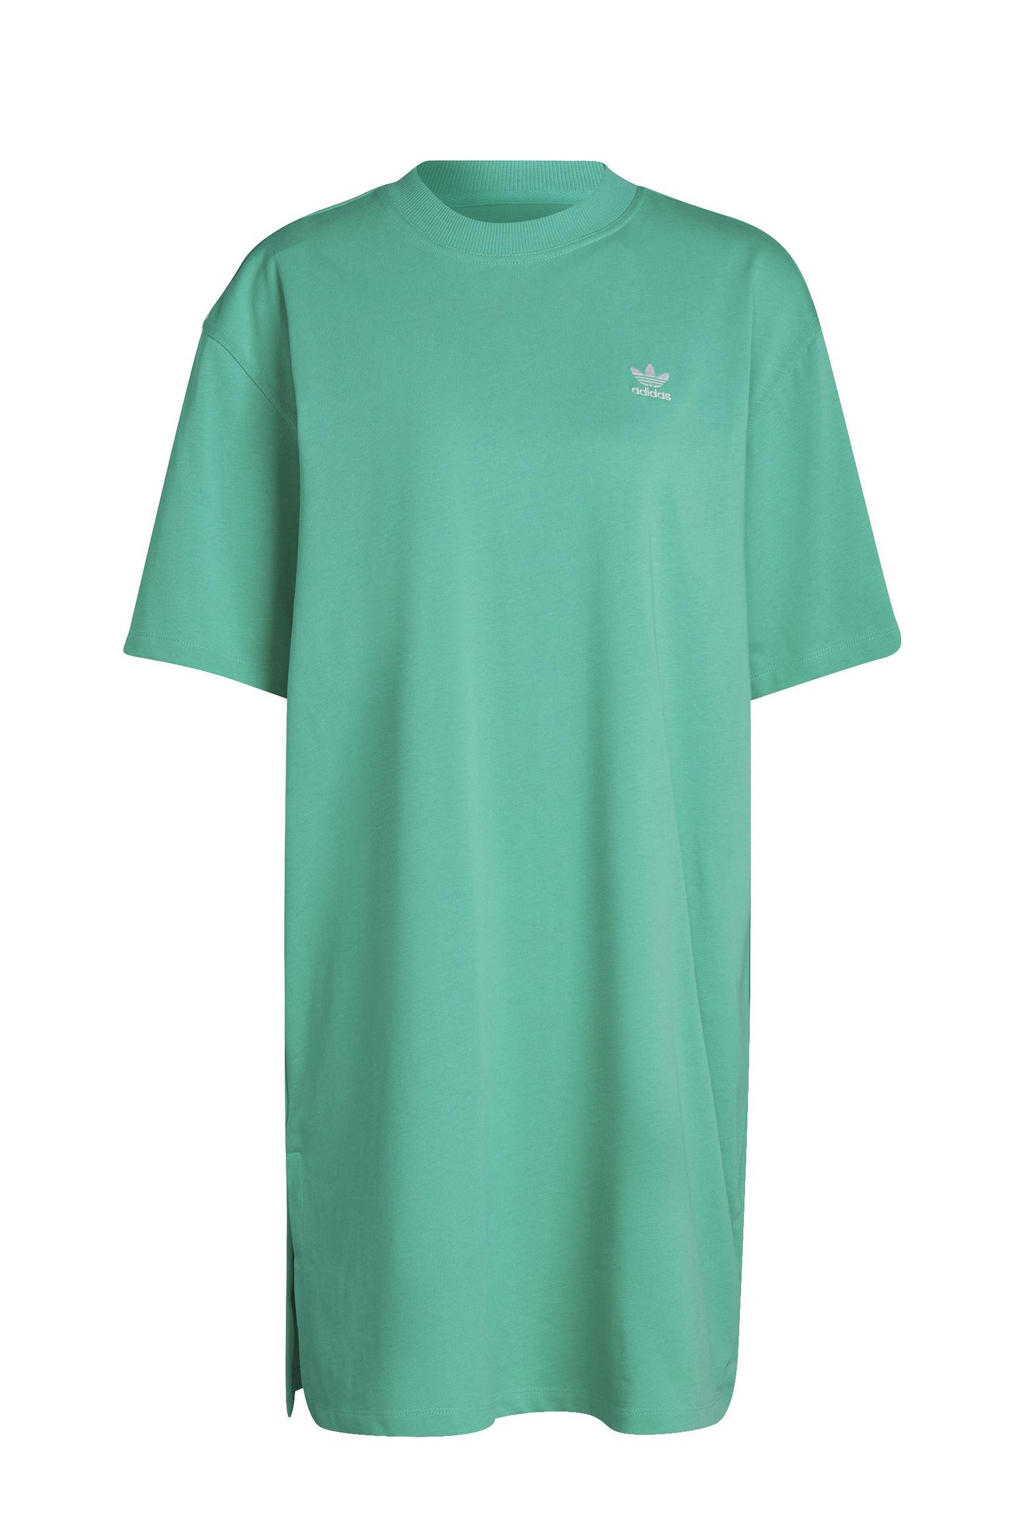 adidas Originals Plus Size T-shirtjurk met logo groen